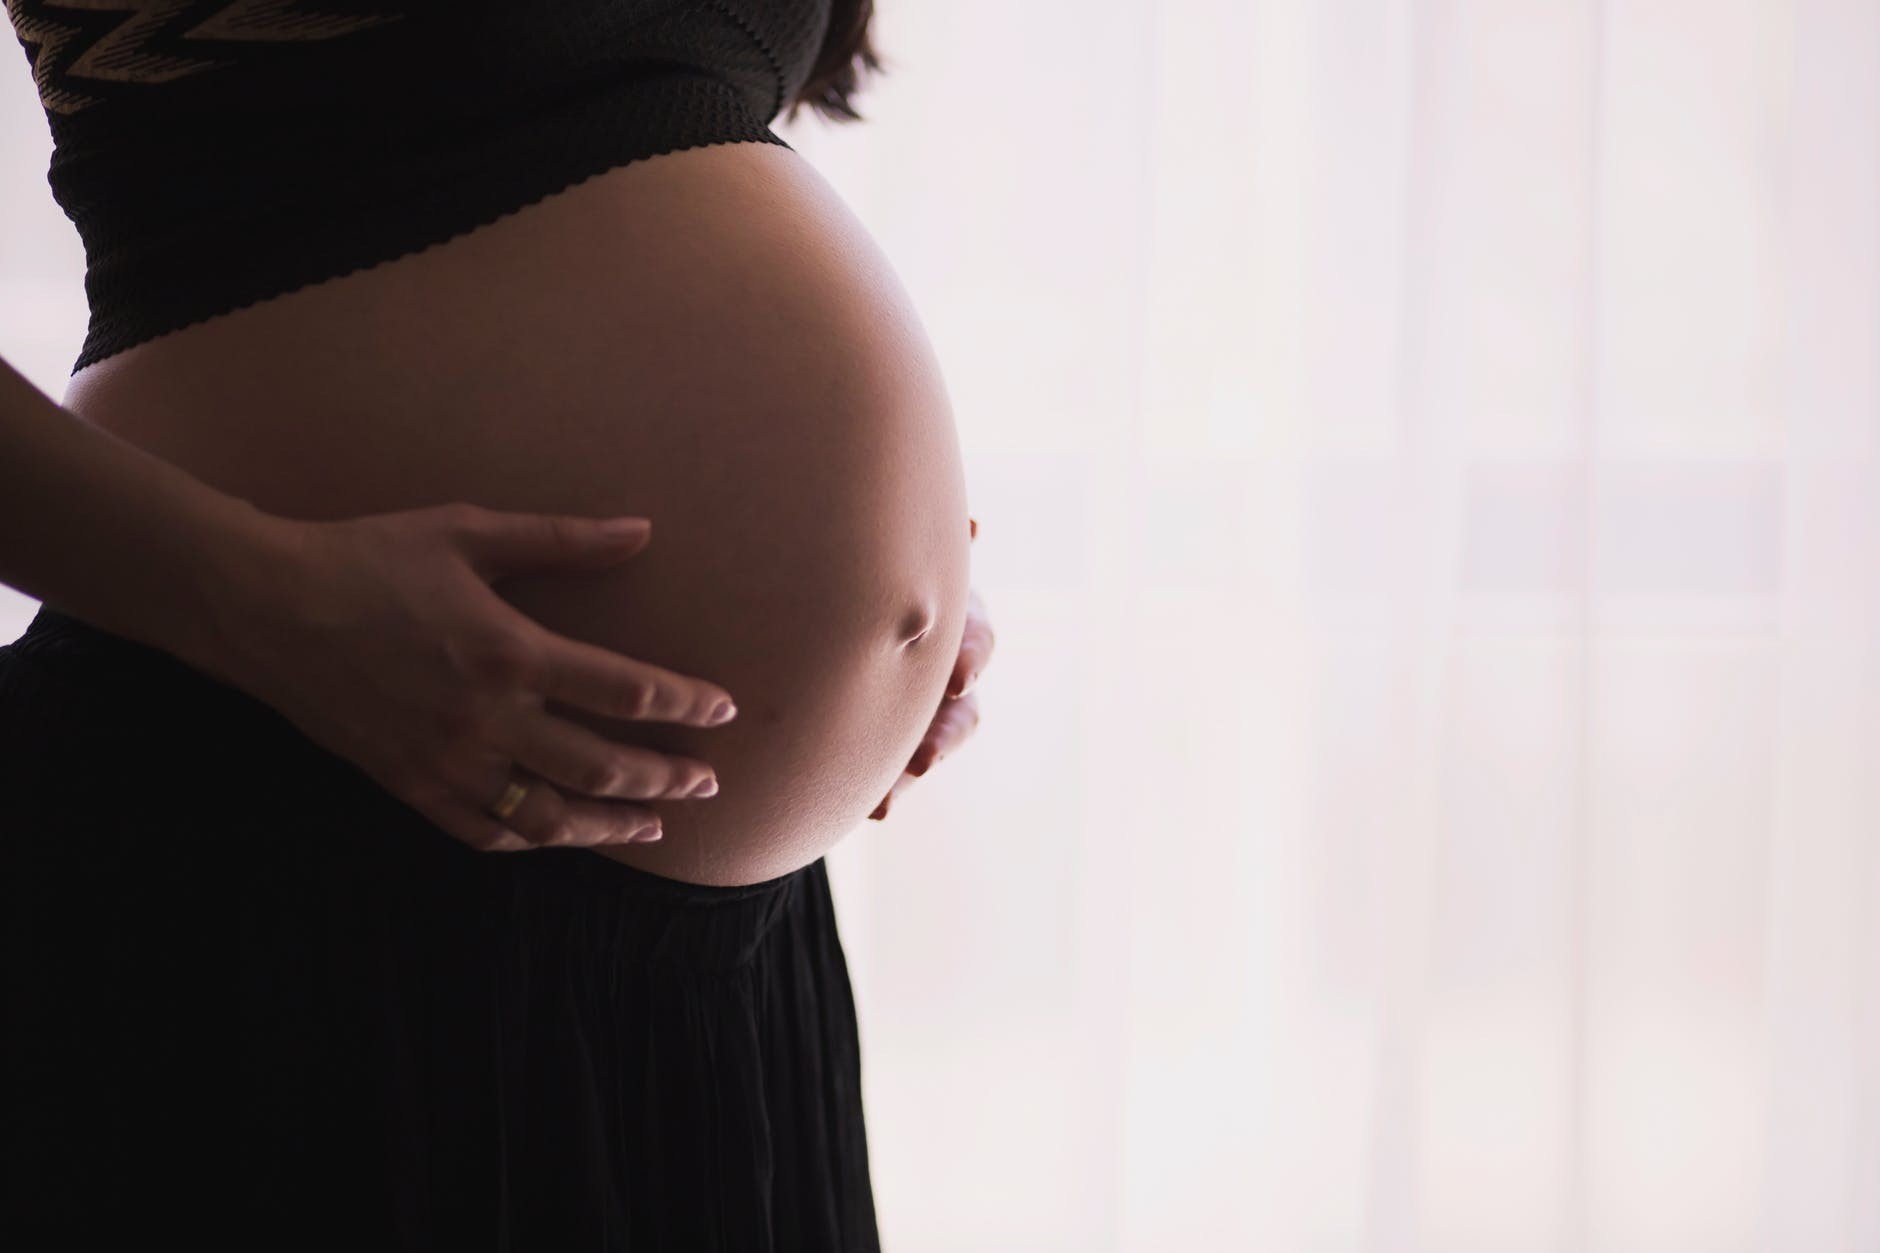 Maternidades de Blumenau terão de informar grávidas que entregar bebê para adoção não é crime